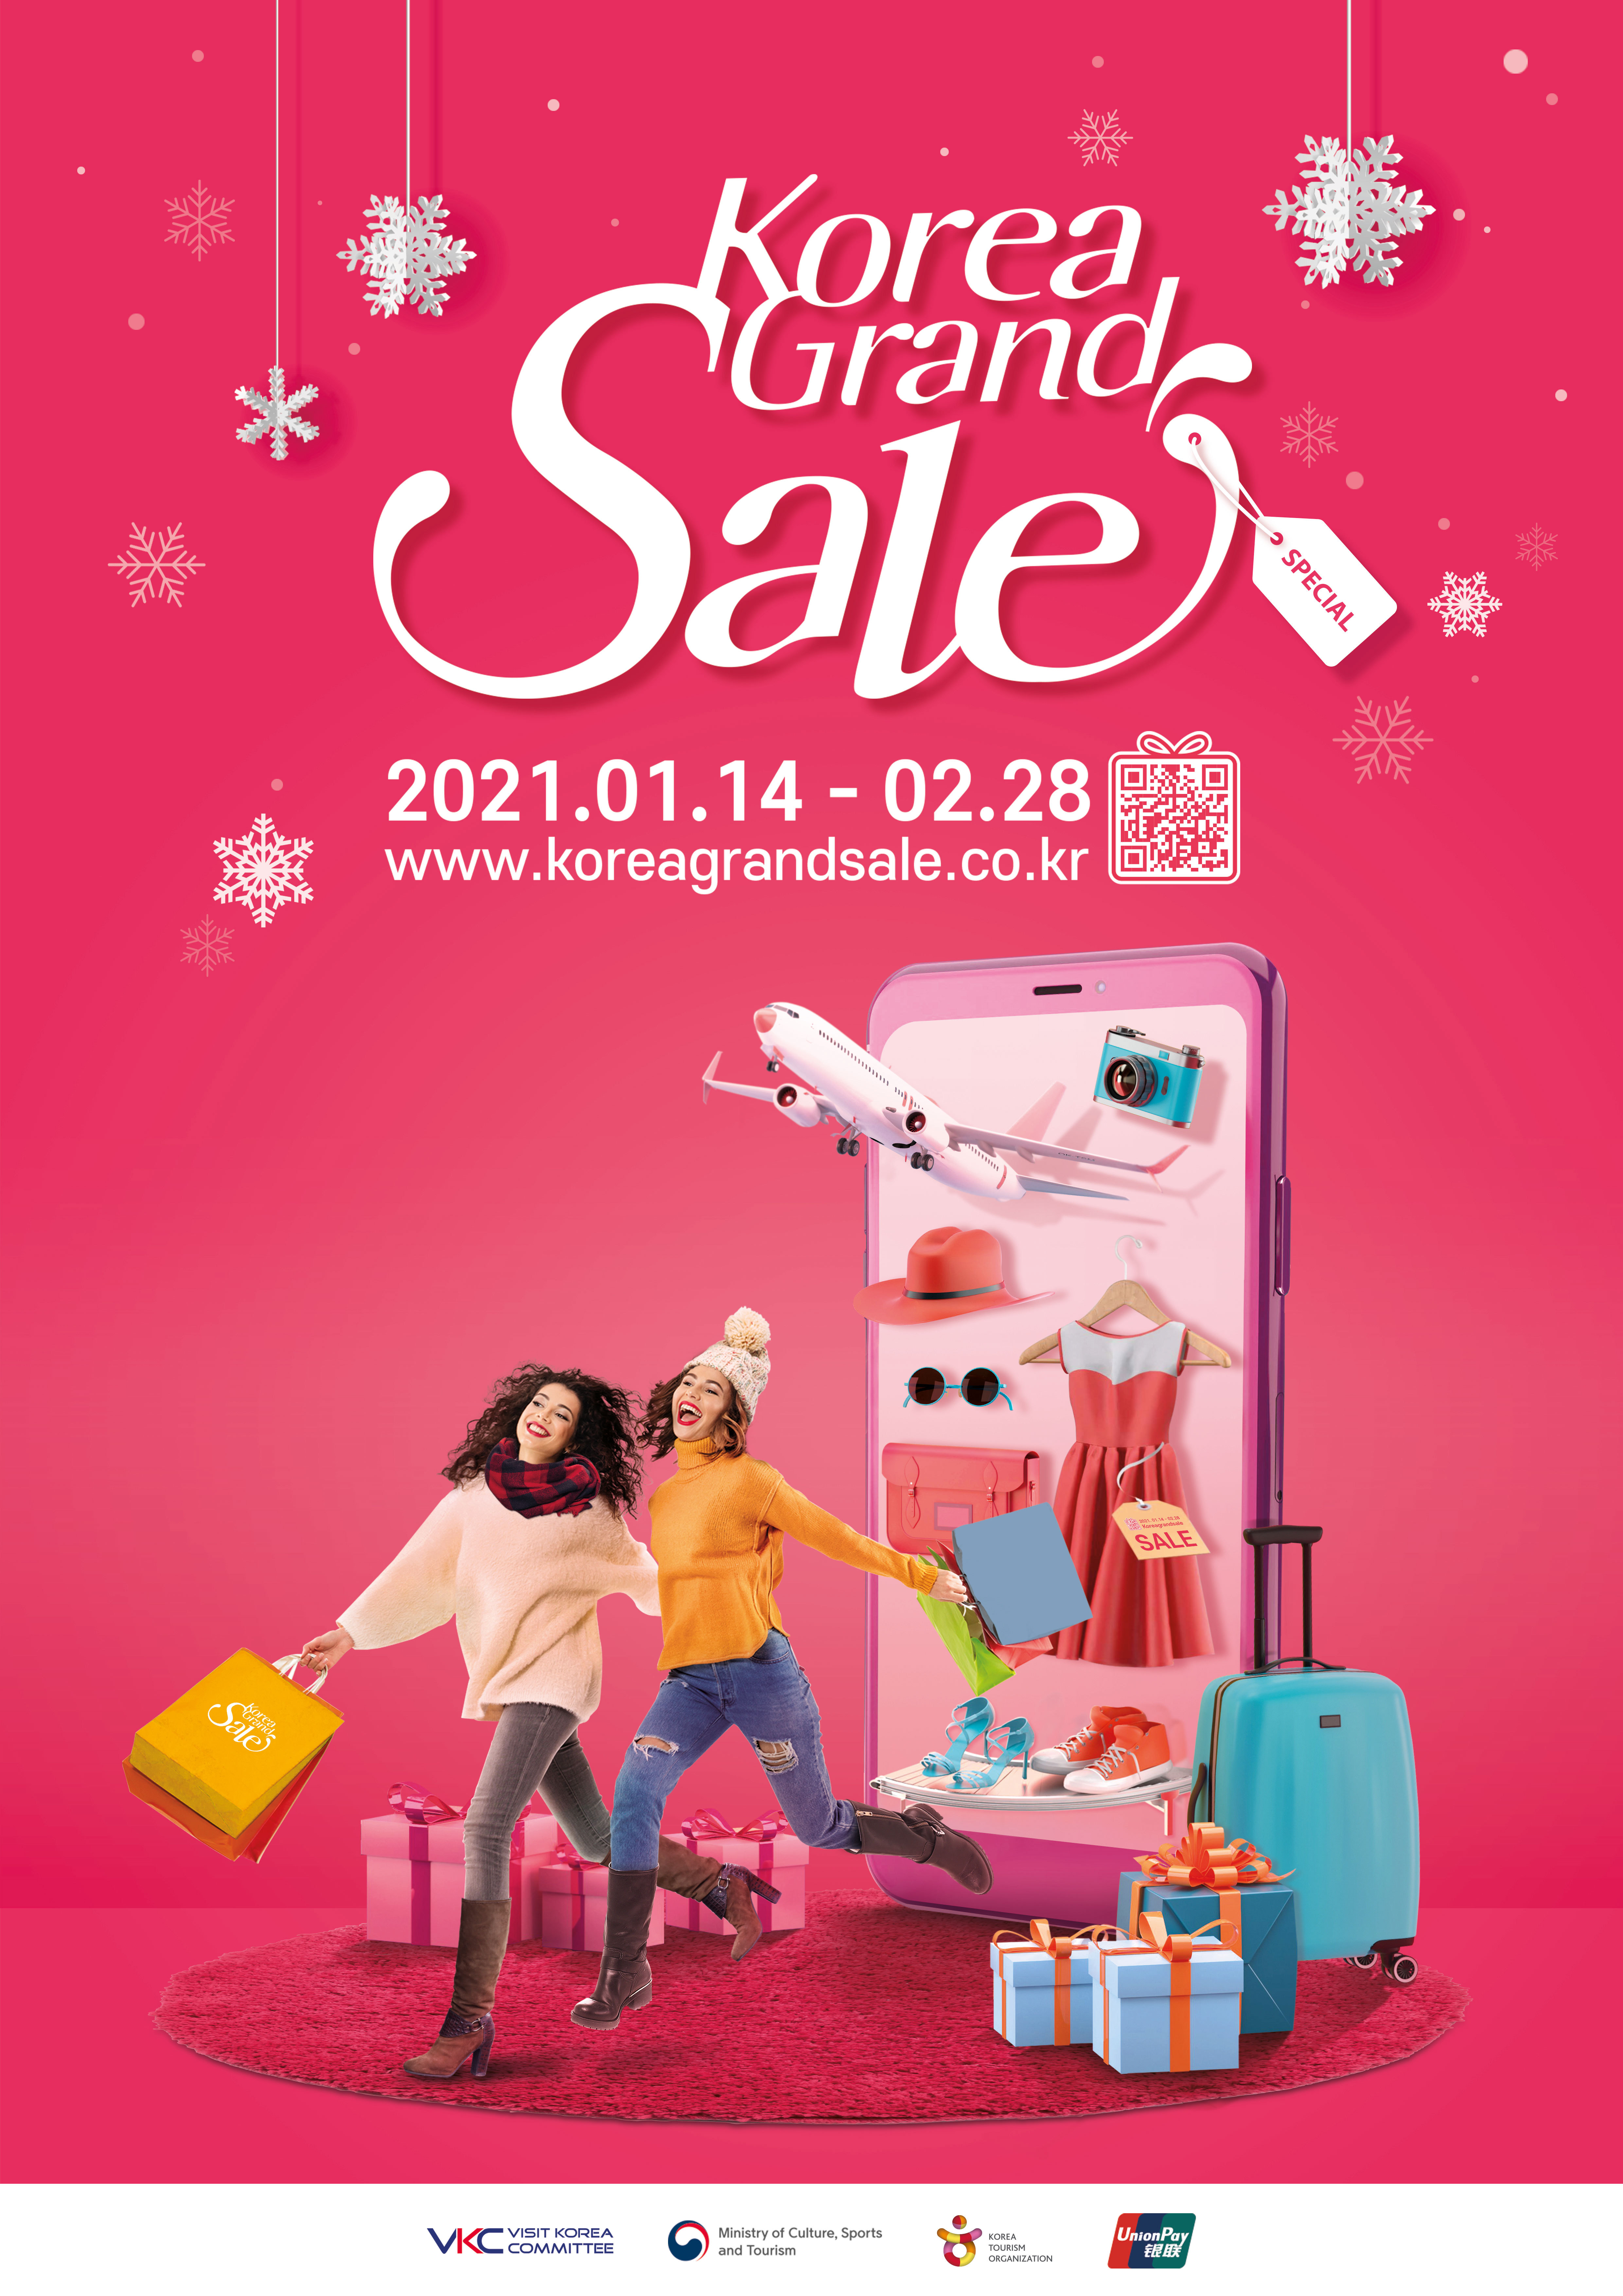 请在线上体验极具魅力的k 内容 在线举办面向外国人的购物文化旅游节 21年韩国购物季 Business Wire